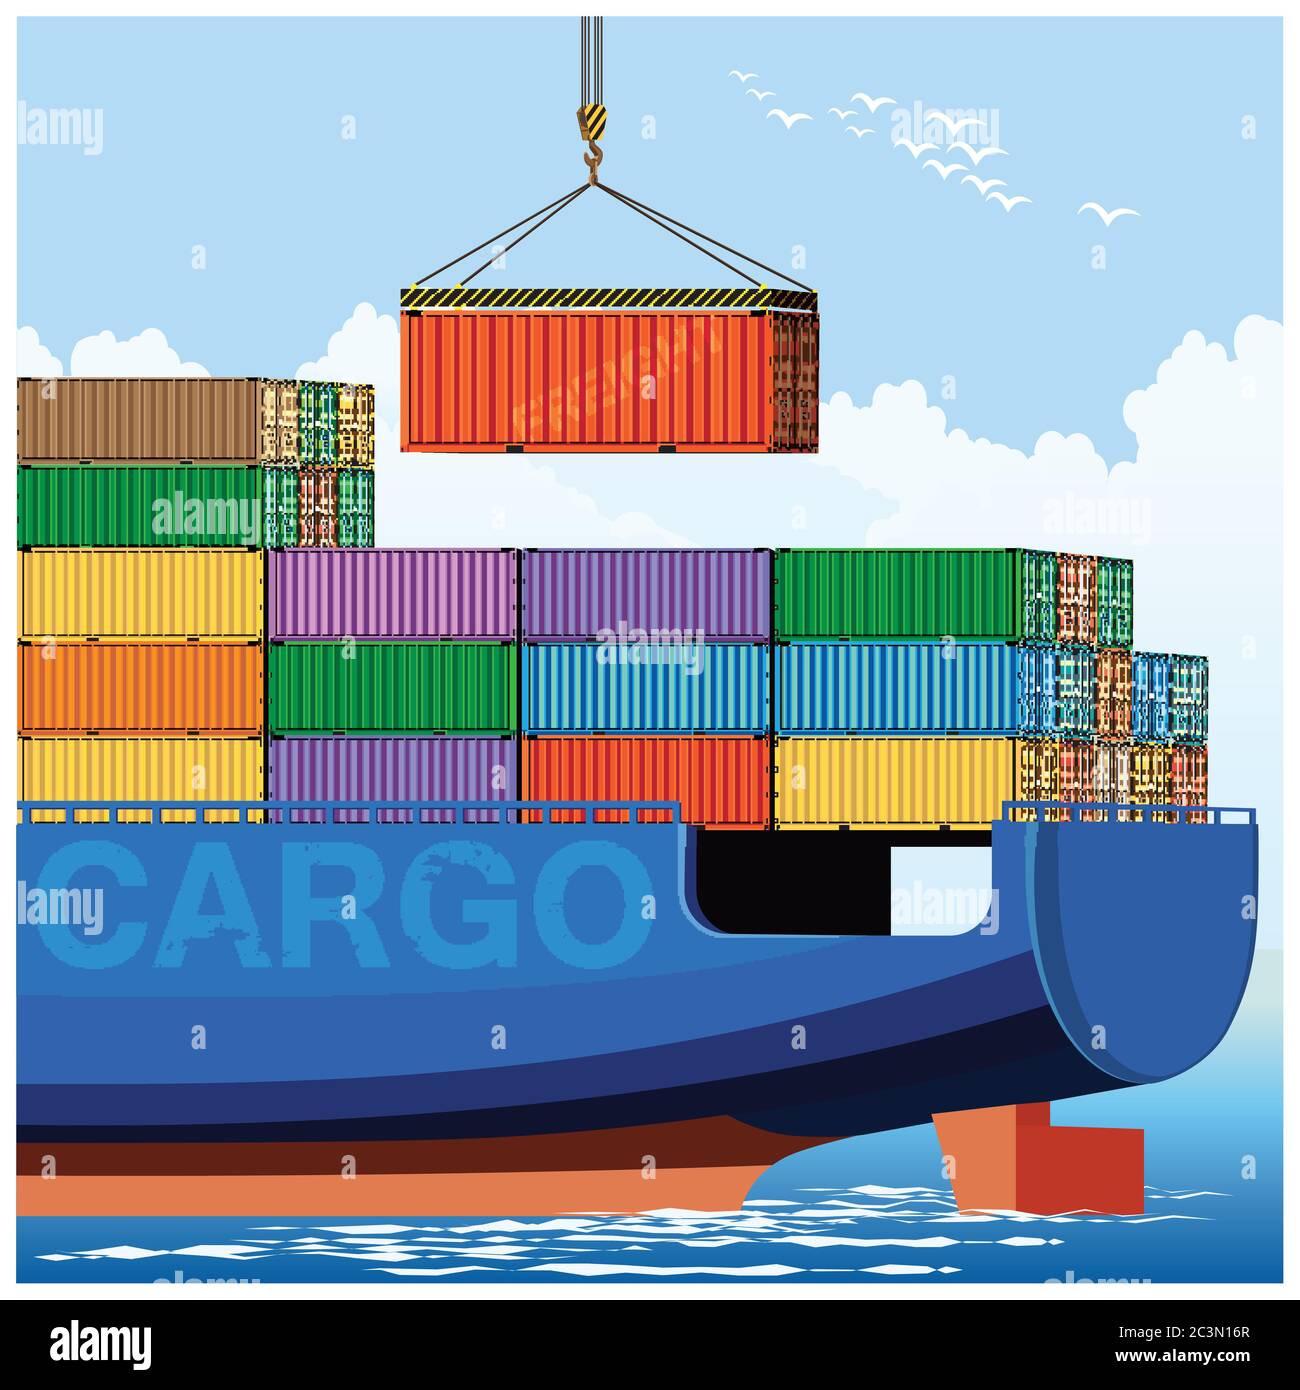 Illustration vectorielle stylisée des conteneurs de chargement sur un navire de cargaison Illustration de Vecteur